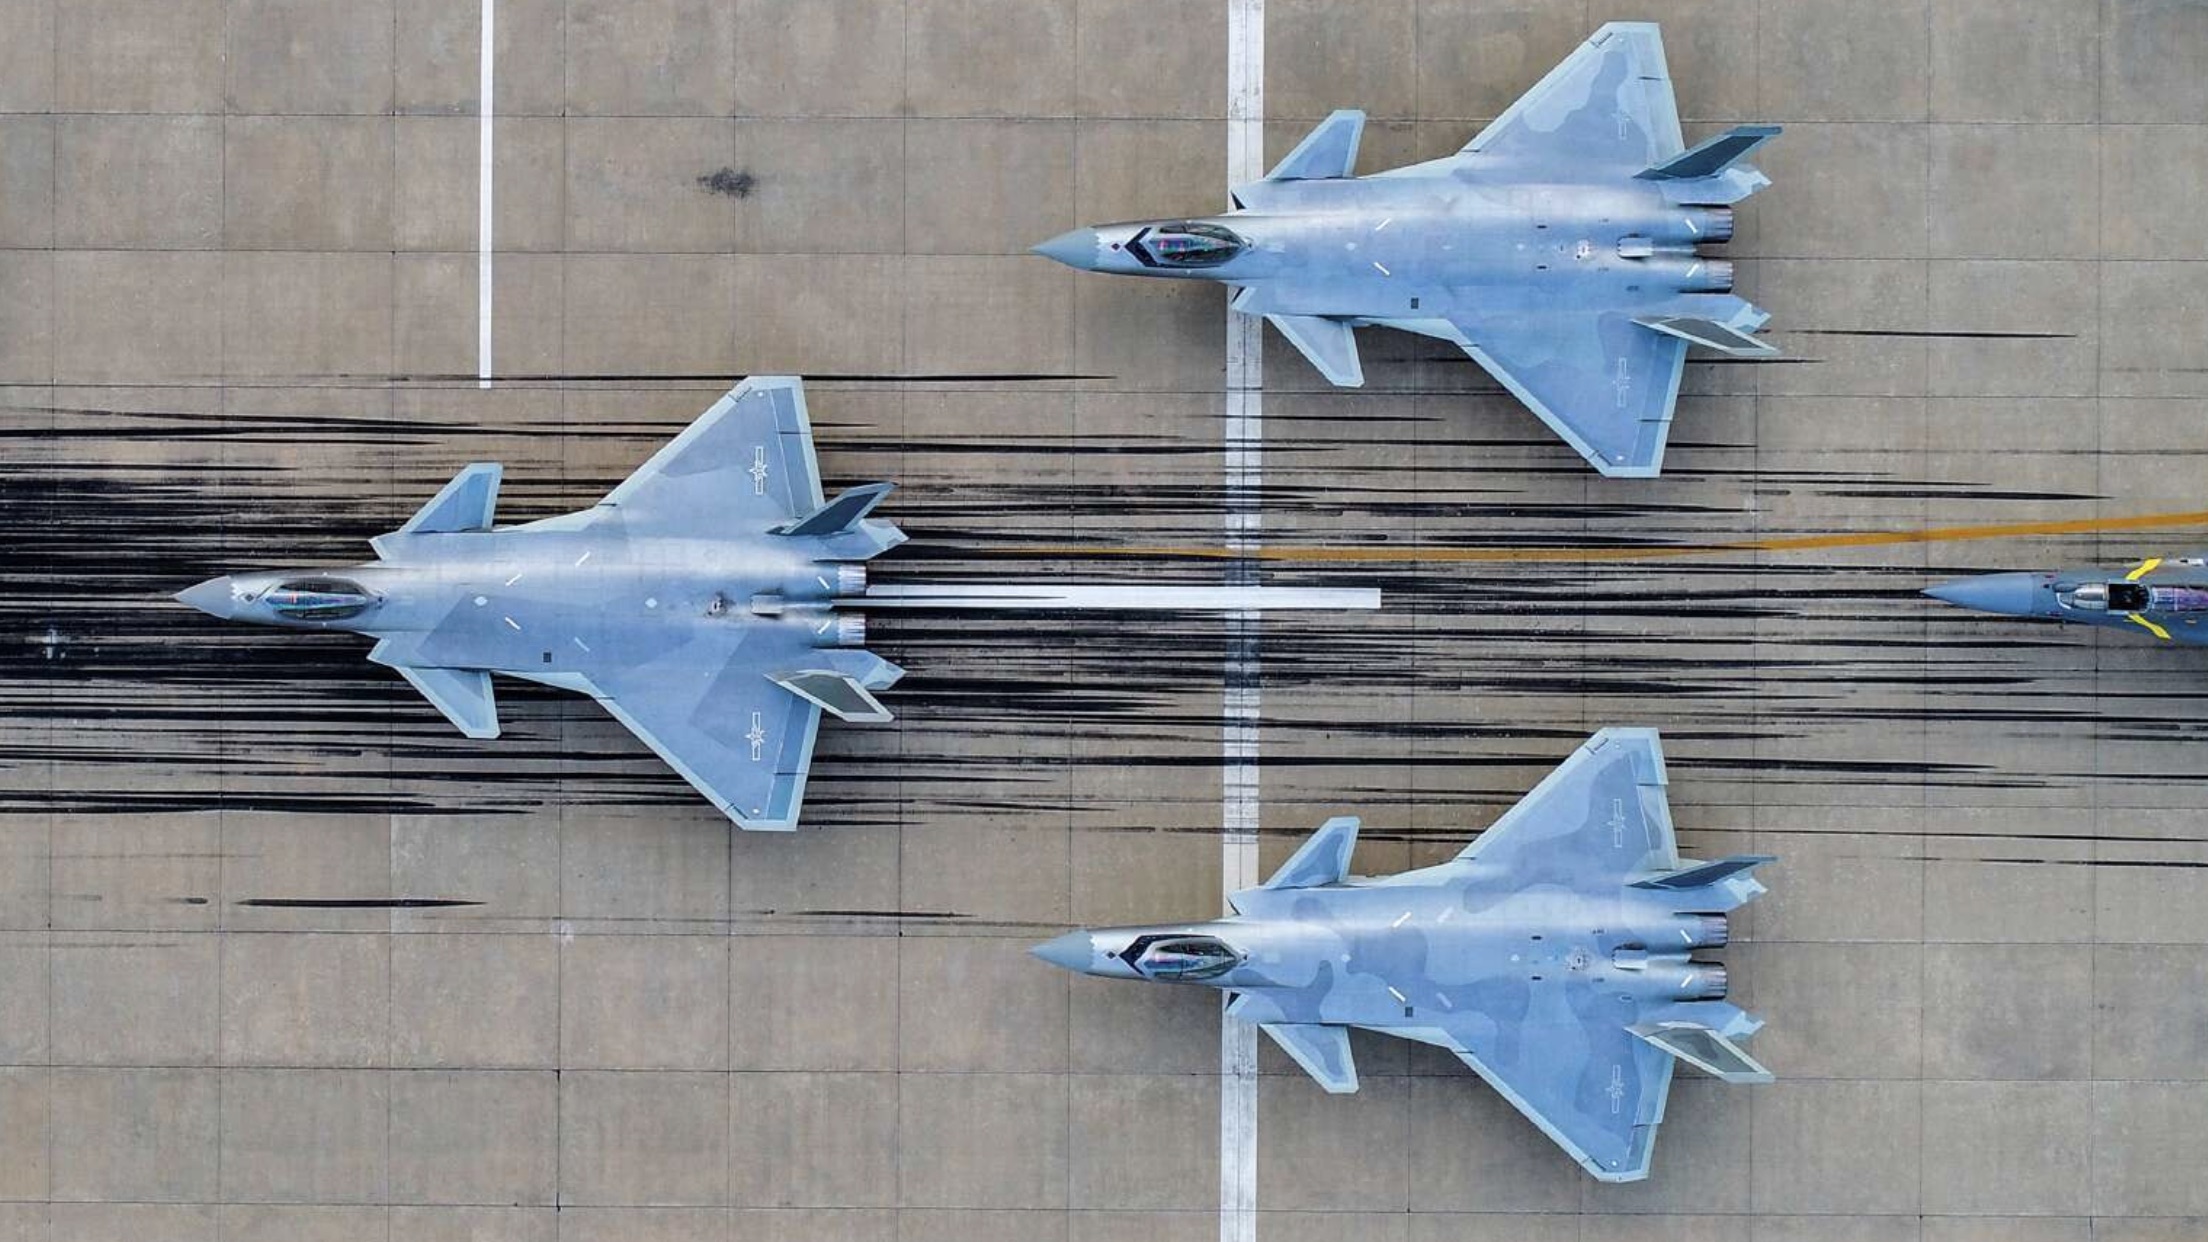 Chiny po raz pierwszy wykorzystują w ćwiczeniach najnowsze myśliwce J-20 - to odpowiednik samolotu F-35